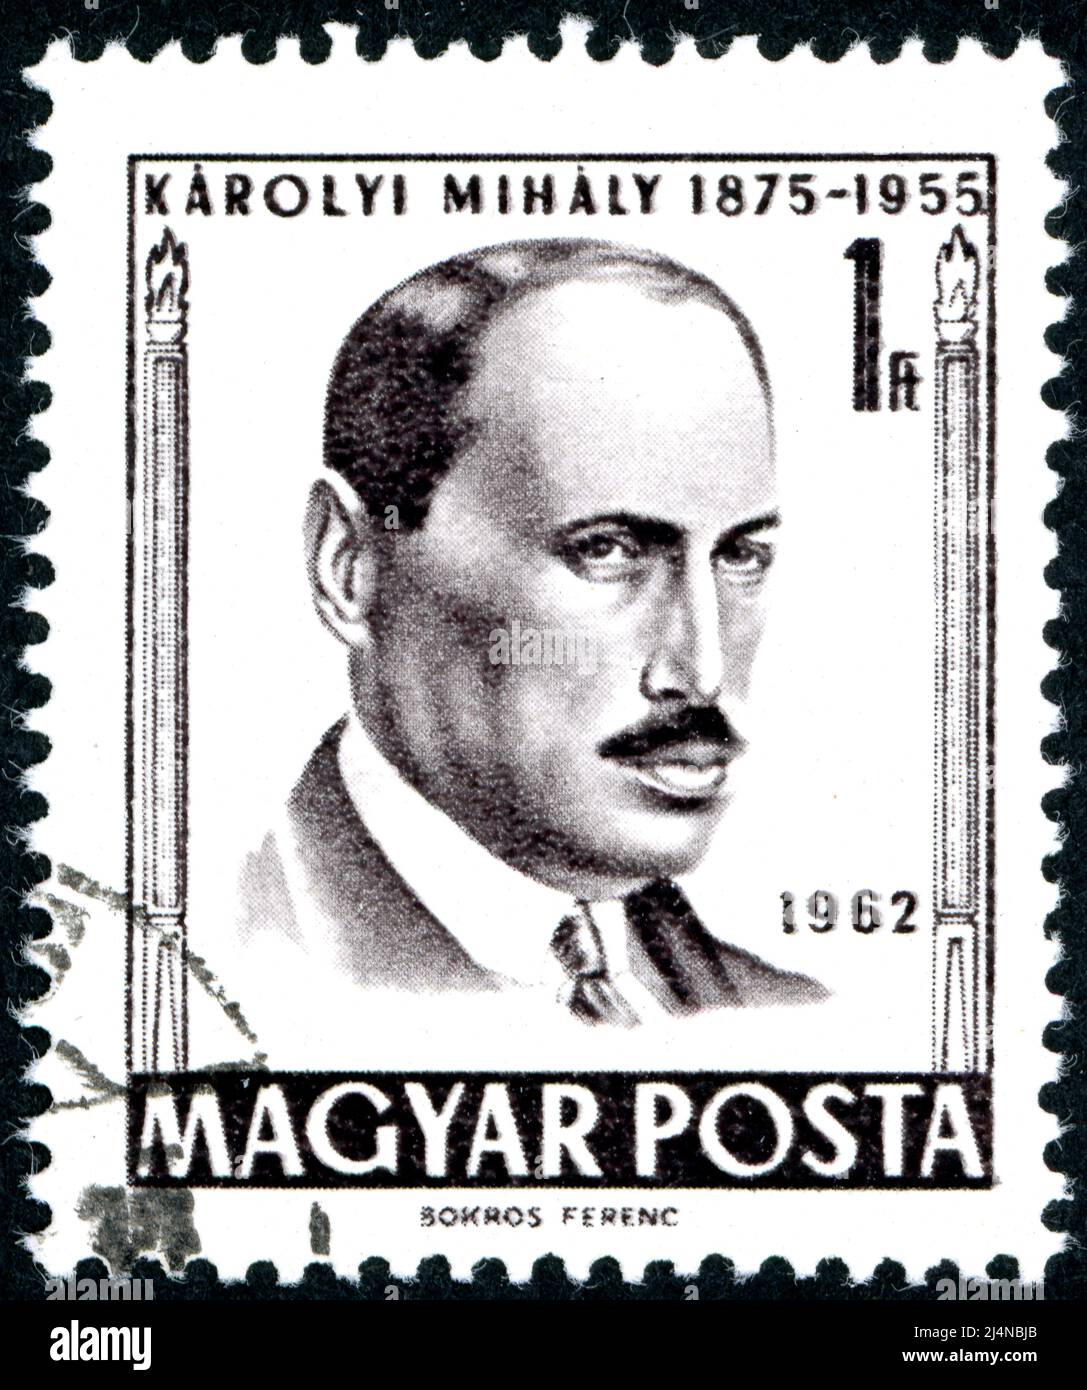 HONGRIE - VERS 1962: Timbre-poste imprimé en Hongrie, montrant le portrait d'un homme politique hongrois Mihaly Karolyi, vers 1962 Banque D'Images